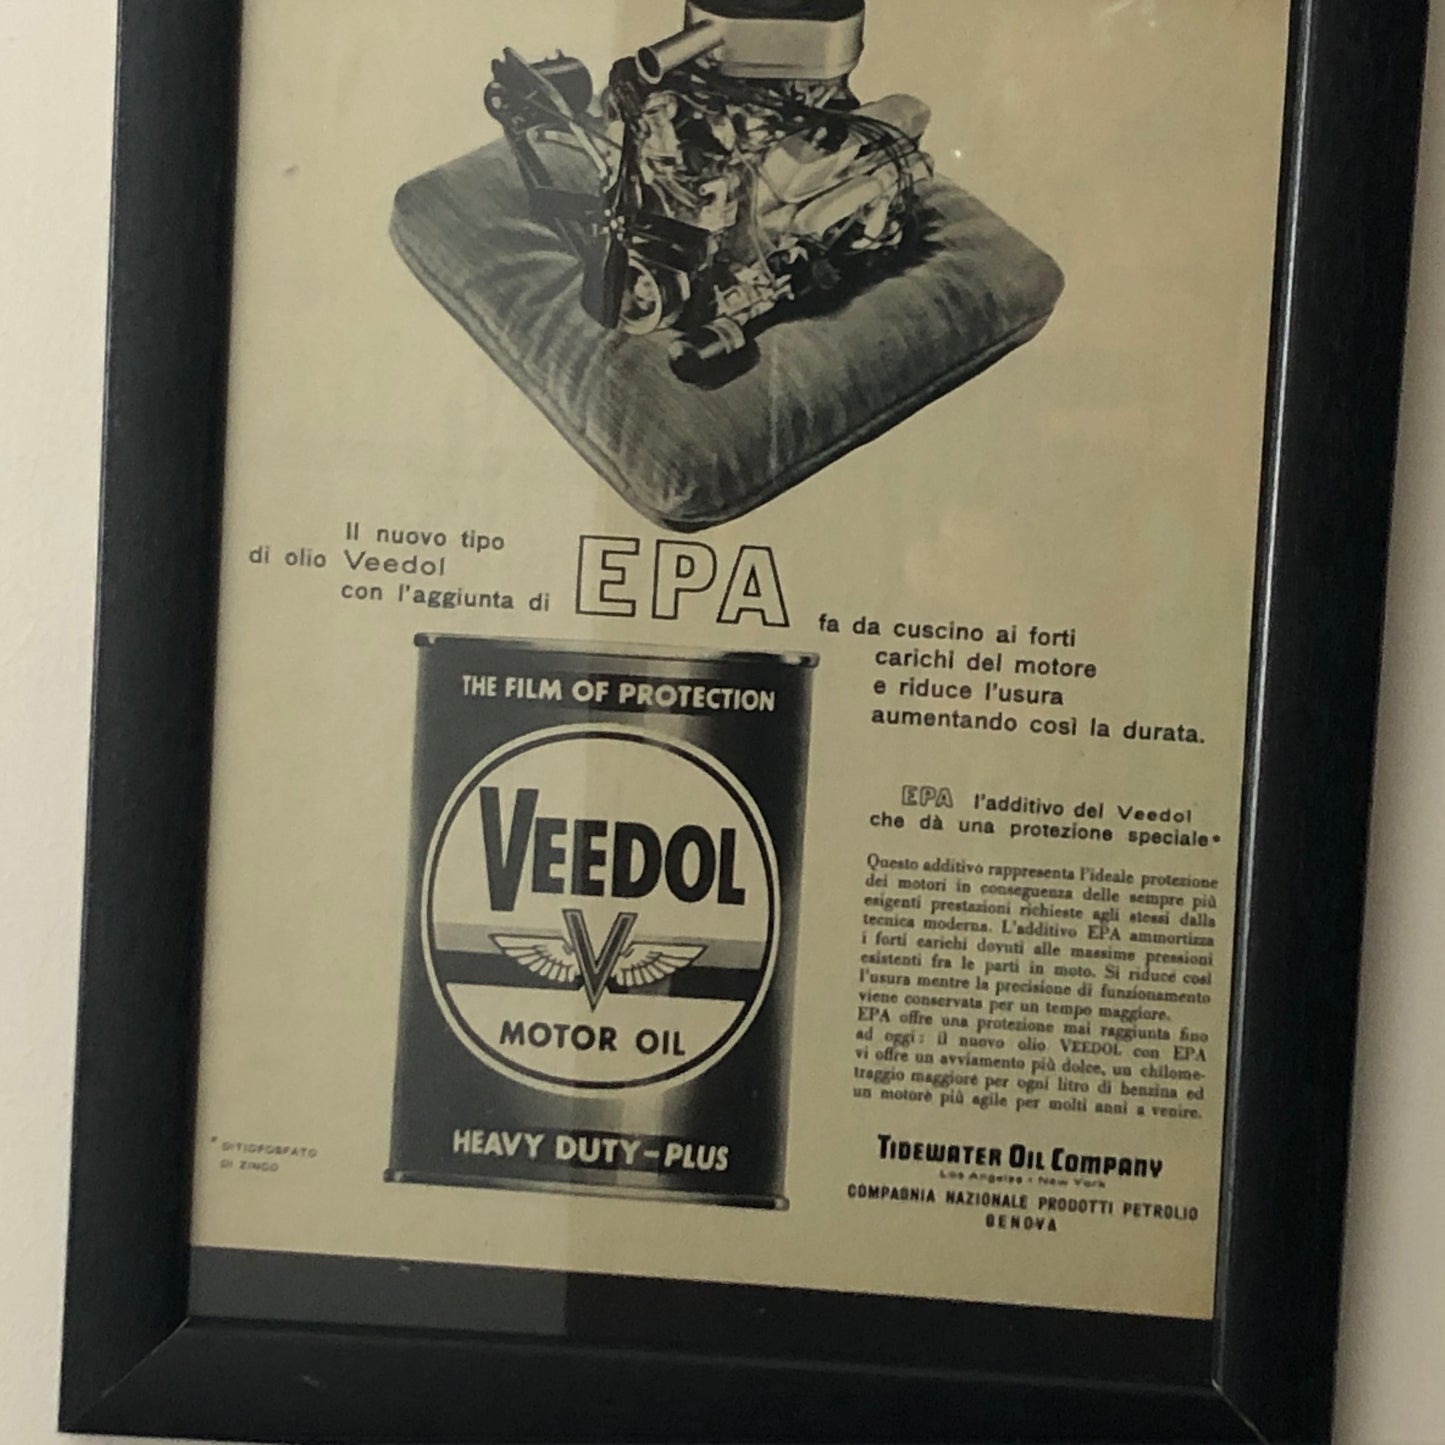 Veedol Motor Oil, Pubblicità Anno 1959 Veedol Motor Oil con Didascalia in Italiano